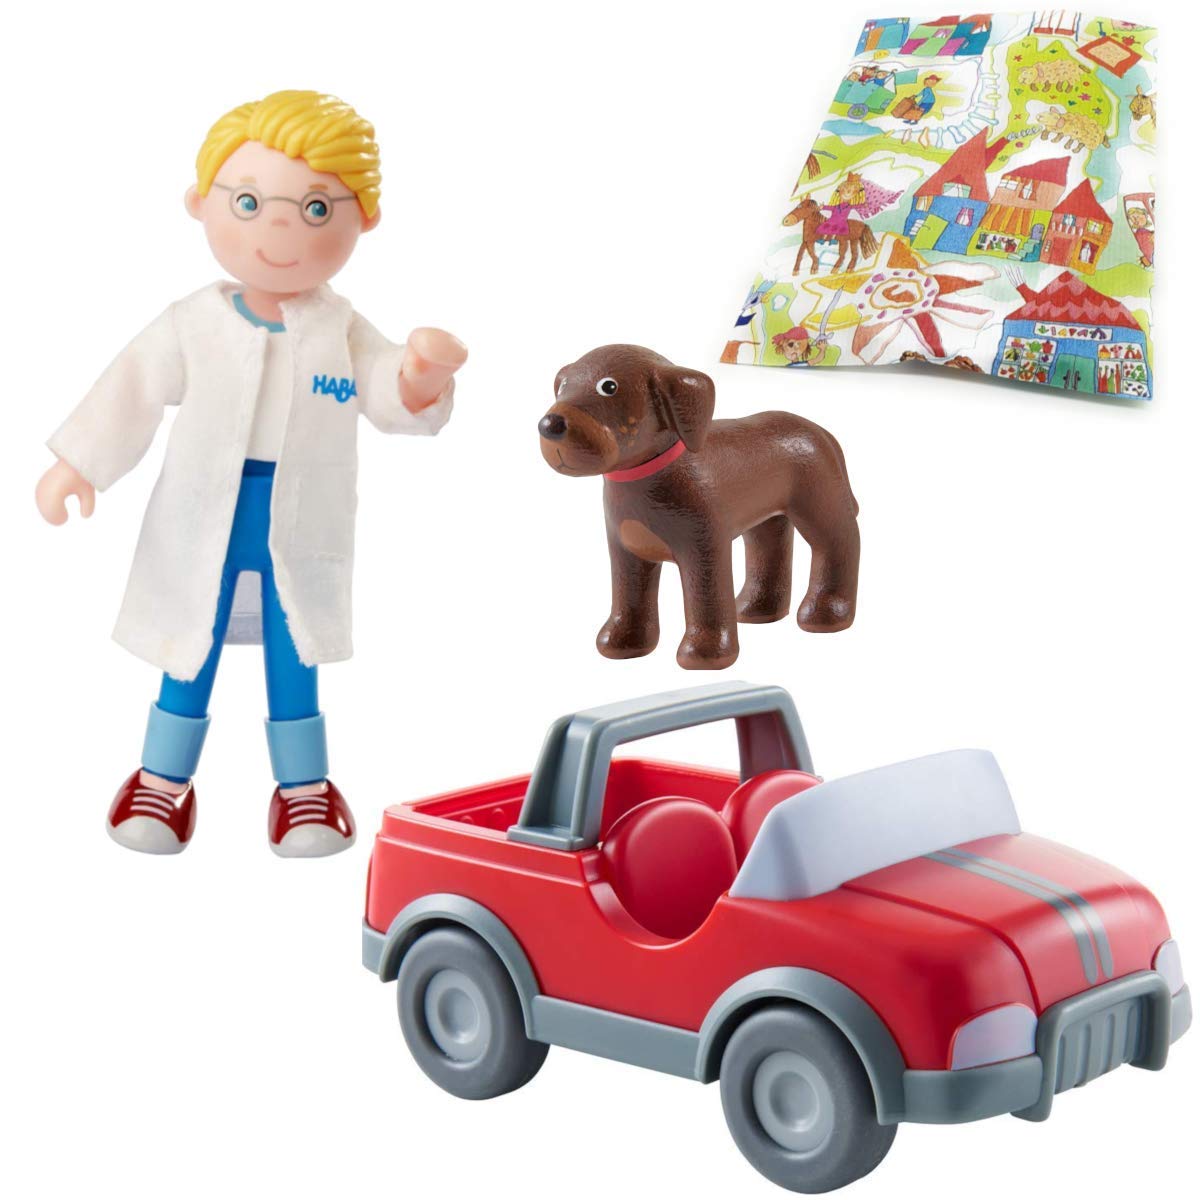 Haba Little Friends Tierarzt-Geländewagen rot mit Tierarzt und Hund | HABA